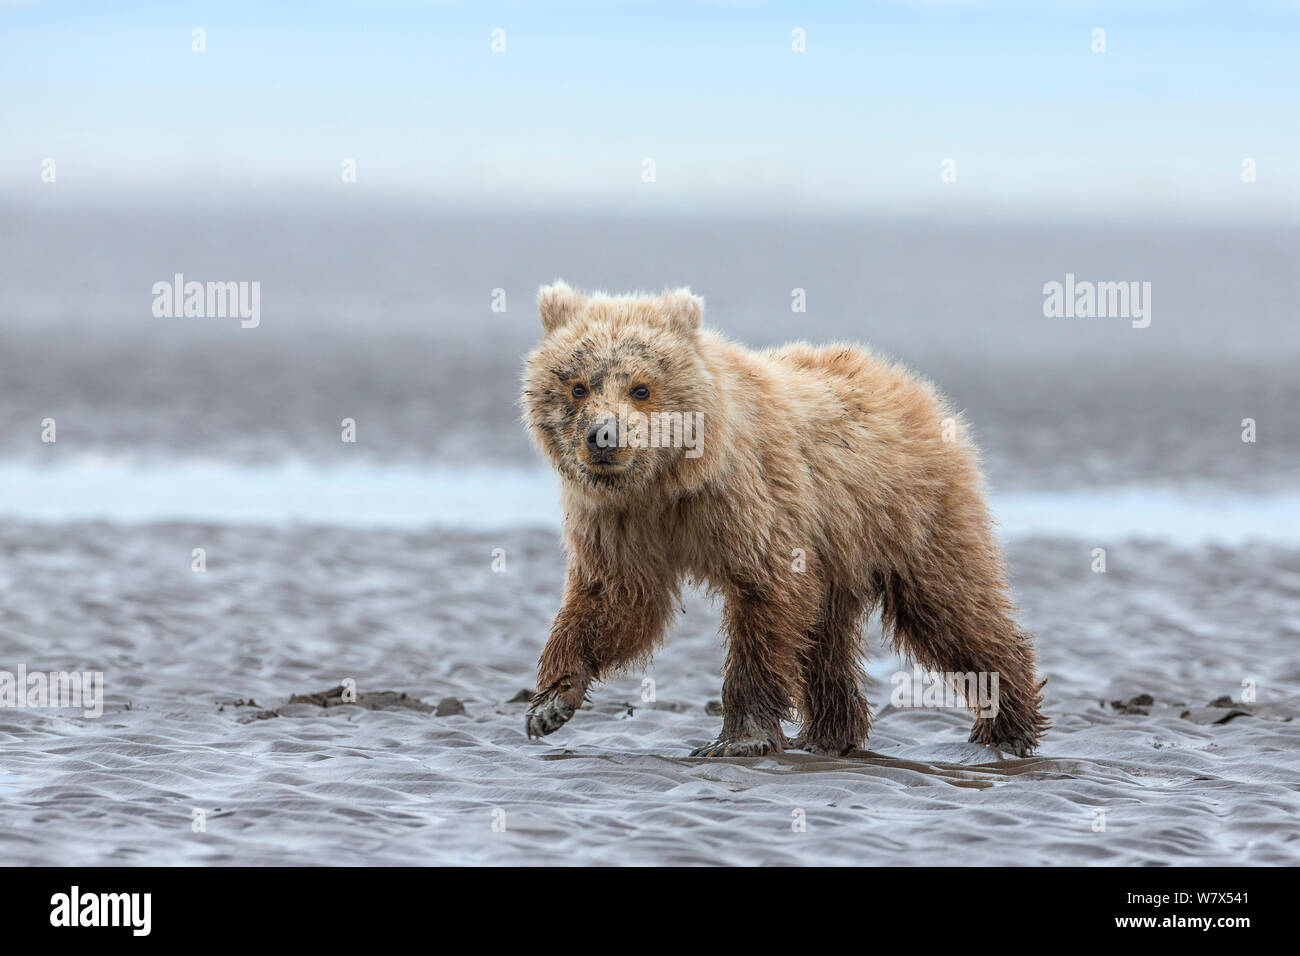 Orso grizzly / Coastal l'orso bruno (Ursus arctos horribilis) cub camminando sul tidal flats, il Parco Nazionale del Lago Clark, Alaska, Stati Uniti d'America. Giugno. Foto Stock